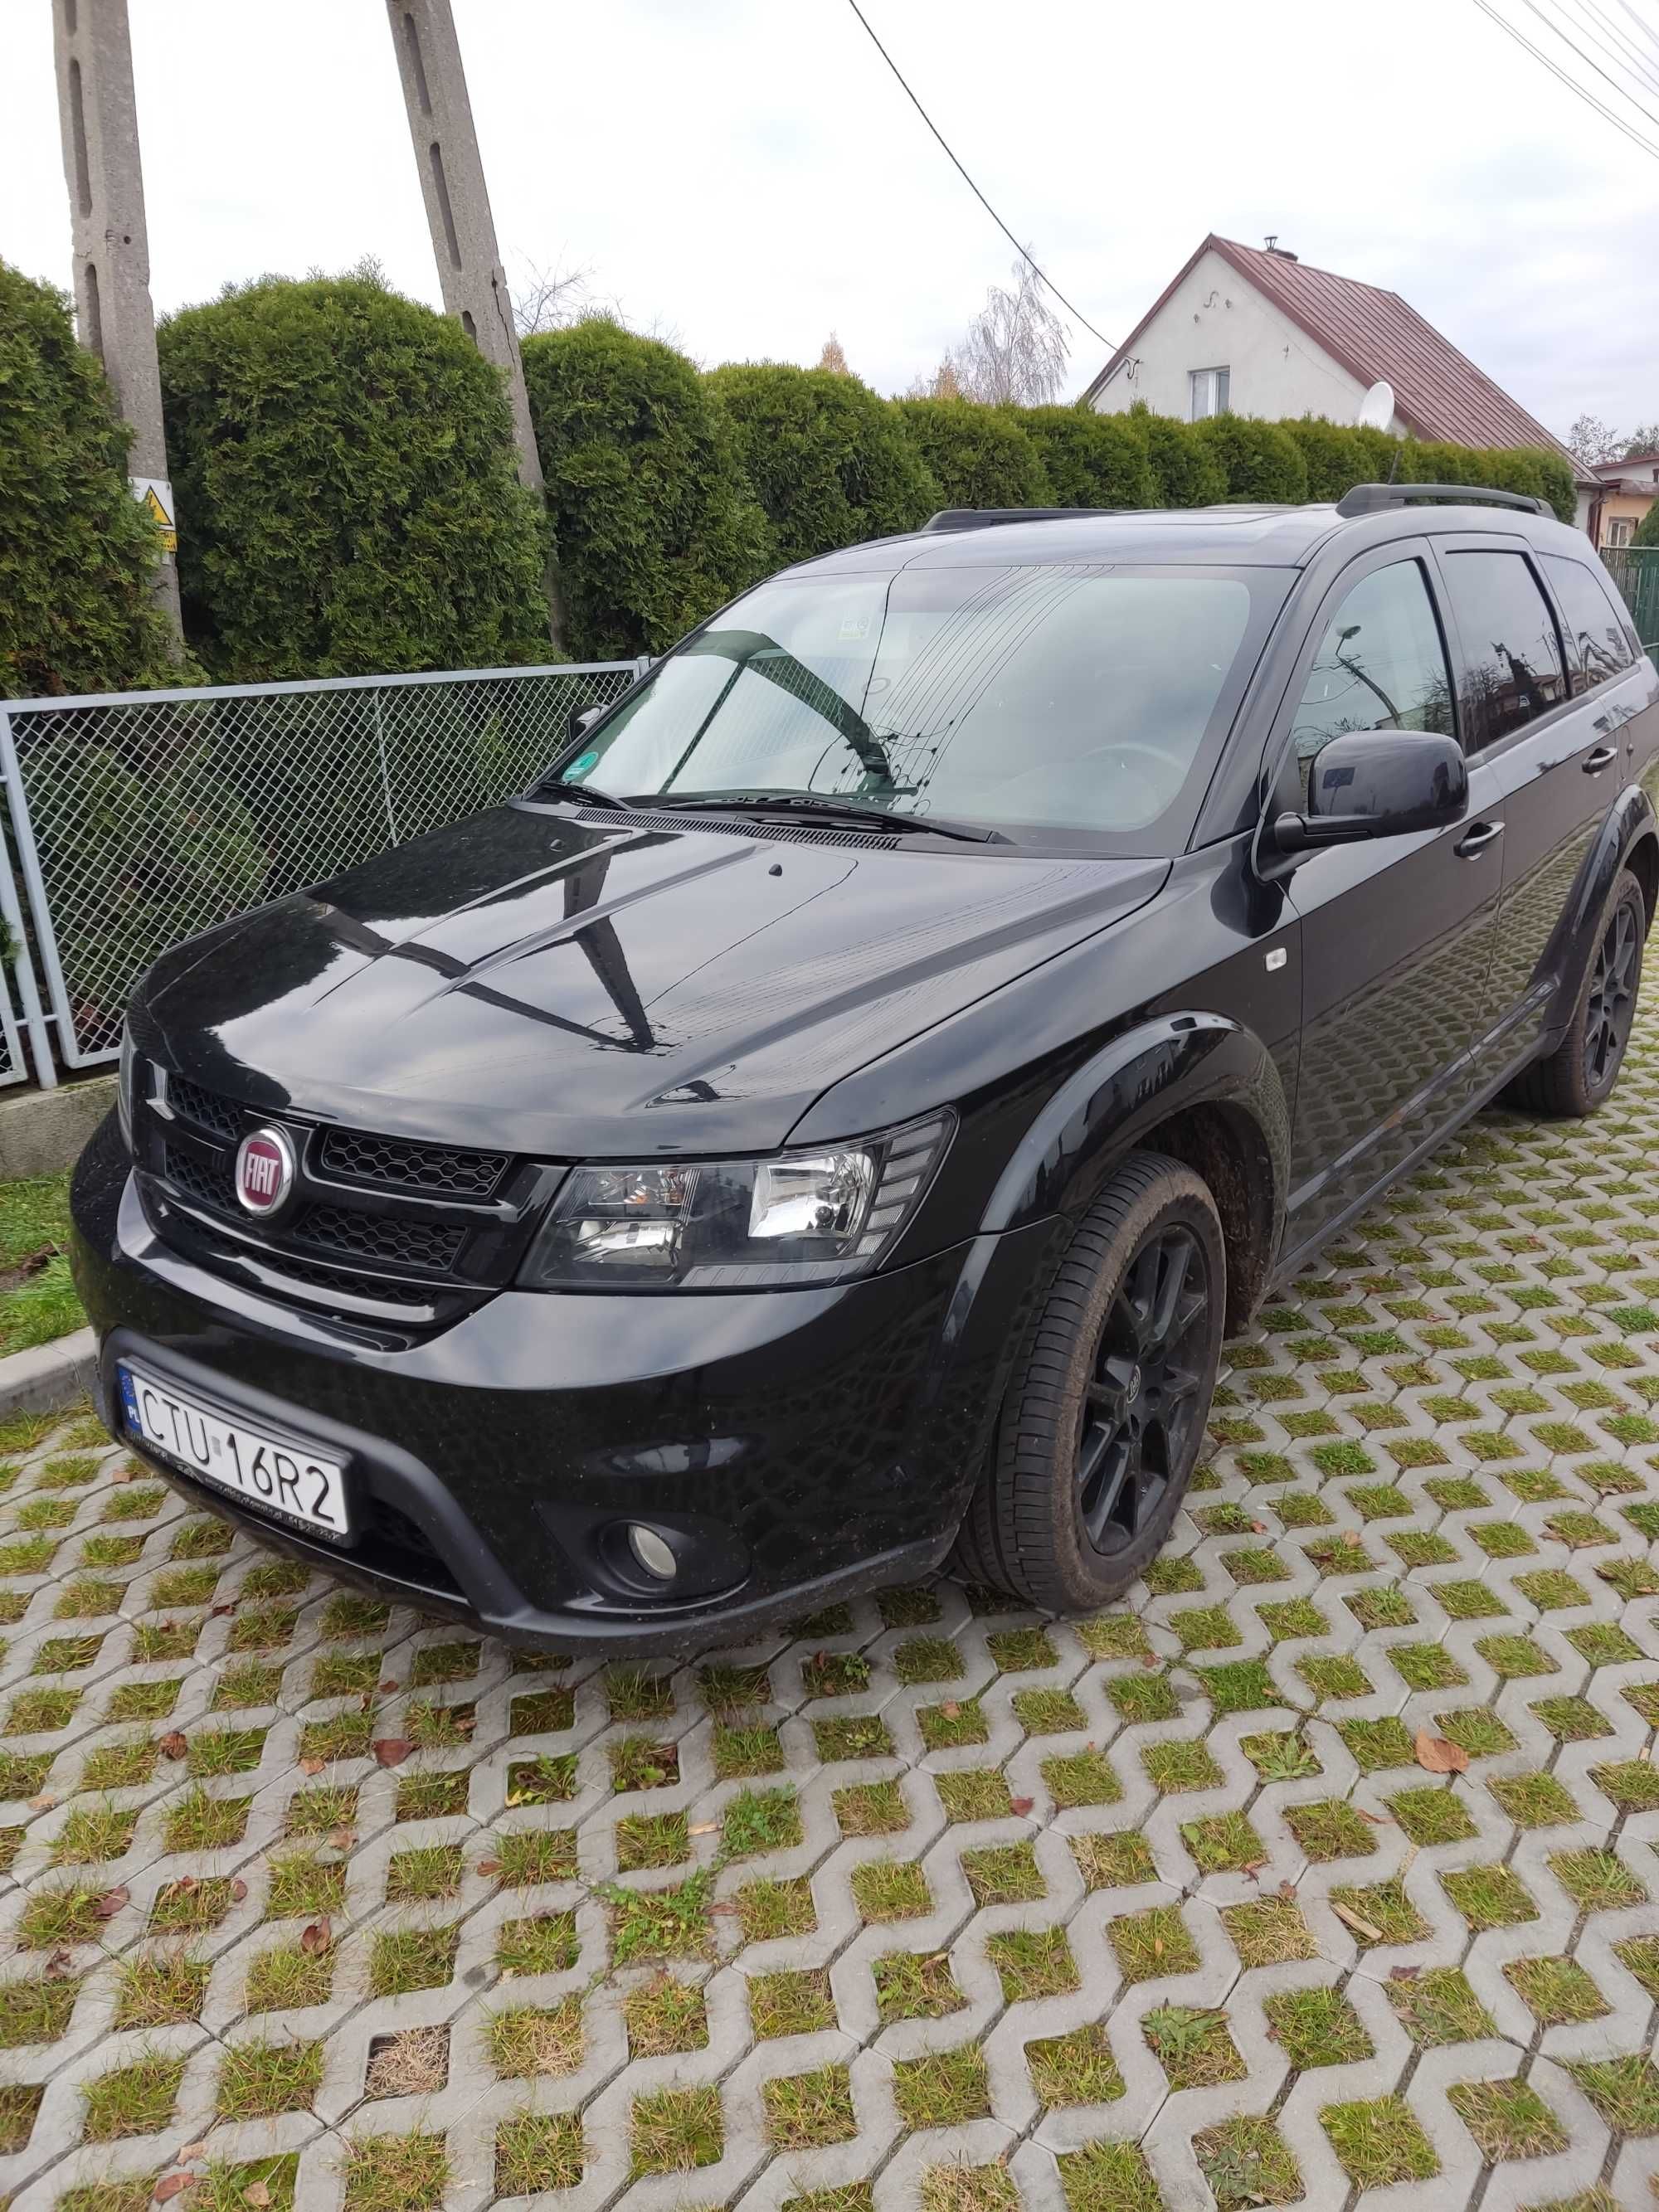 Fiat Freemont 2.0 Multijet Black Code AWD 170km Śliwice • OLX.pl